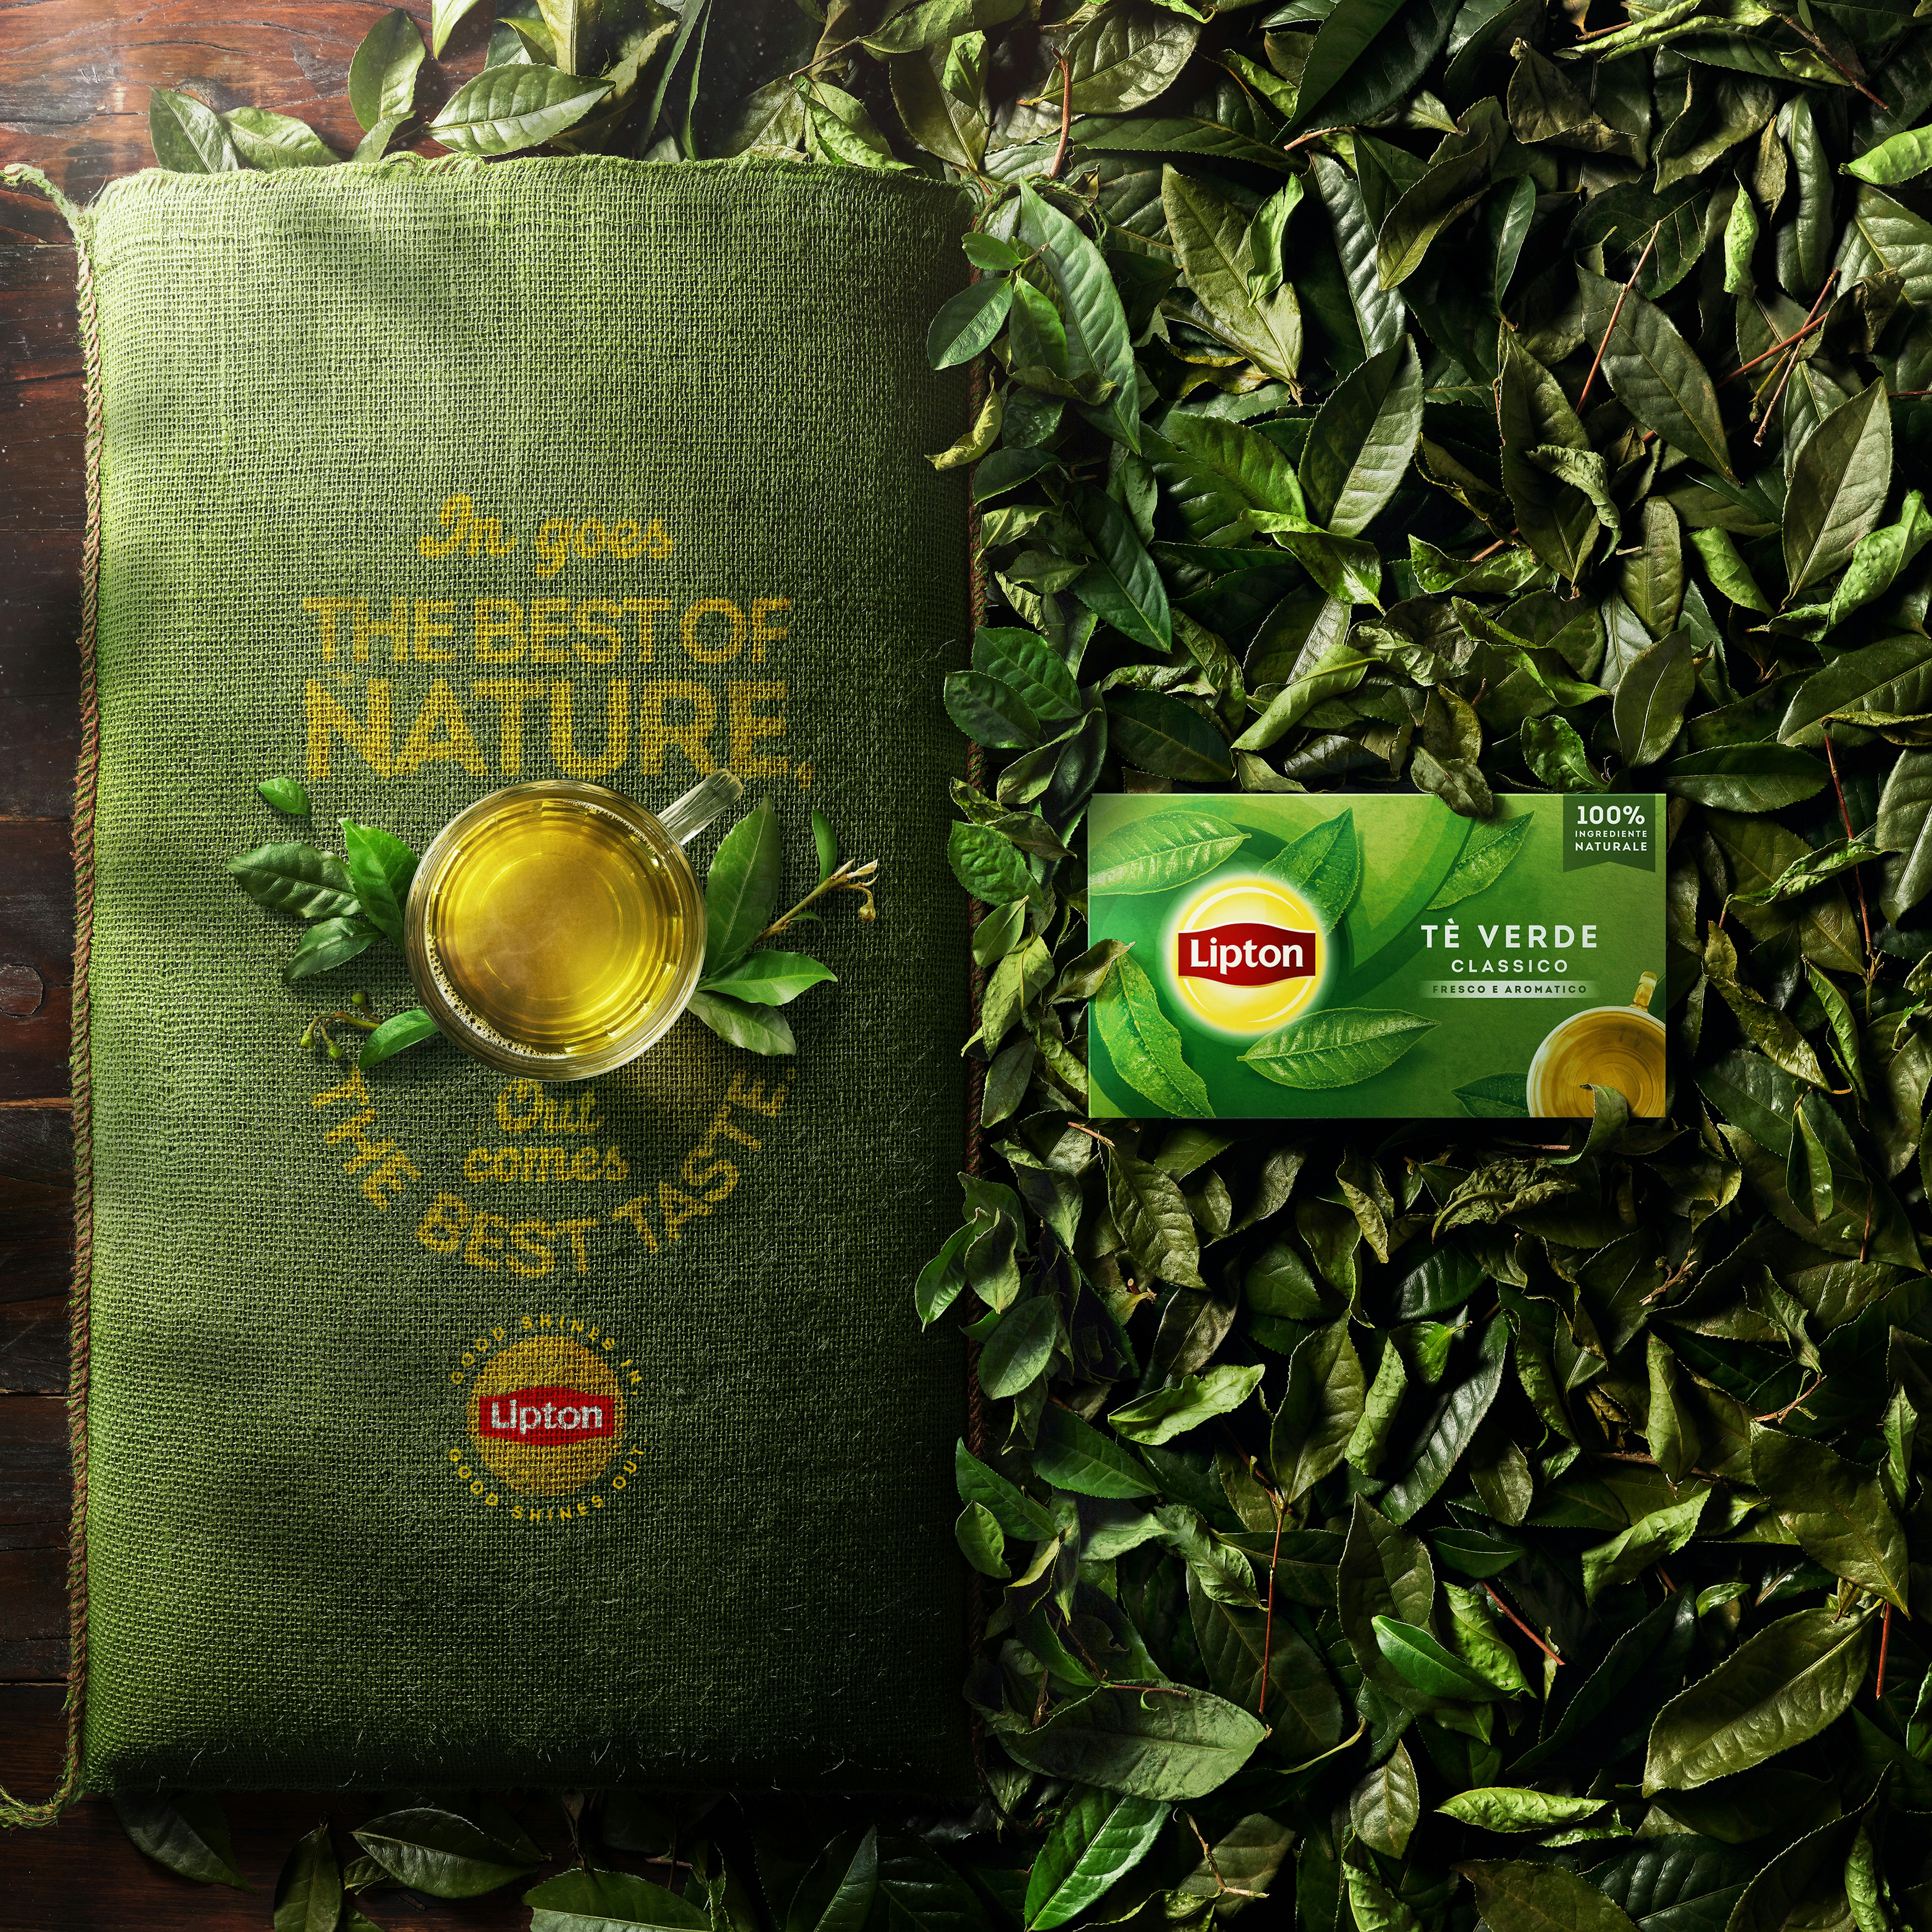 Saco verde de chá Lipton rodeado de folhas com uma xícara de chá em cima e a embalagem ao lado sobre as folhas